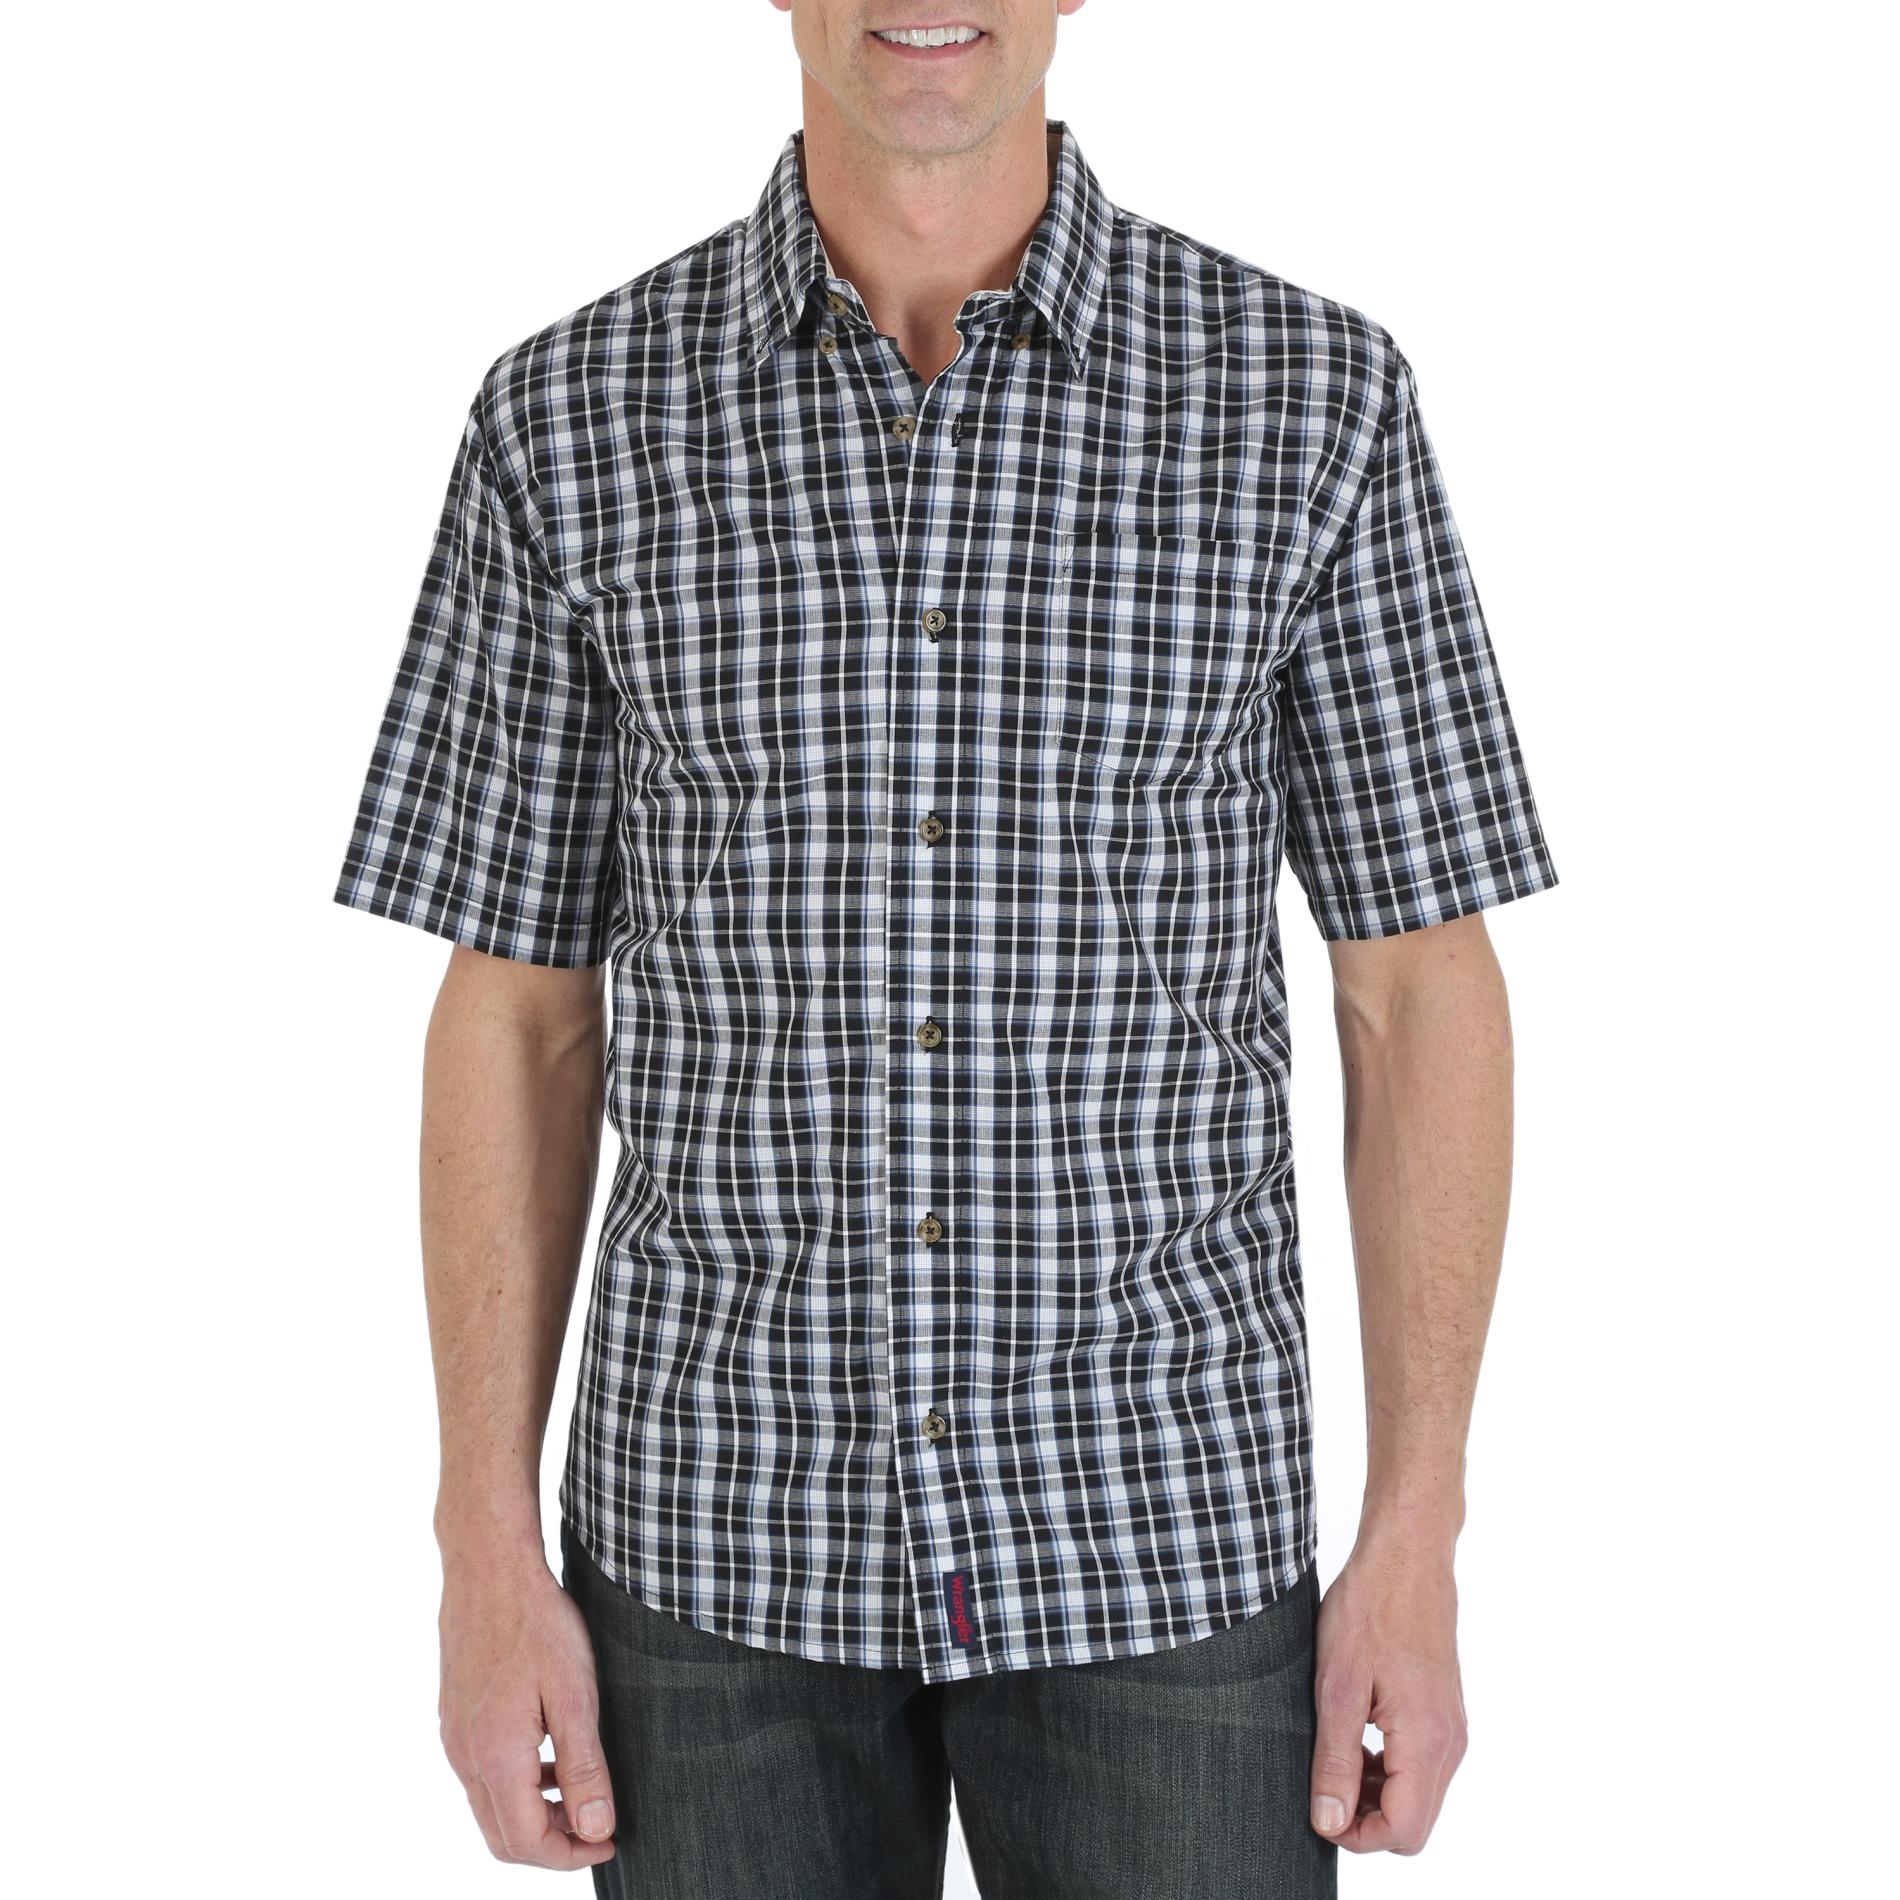 Wrangler Men's Woven Short-Sleeve Shirt - Plaid